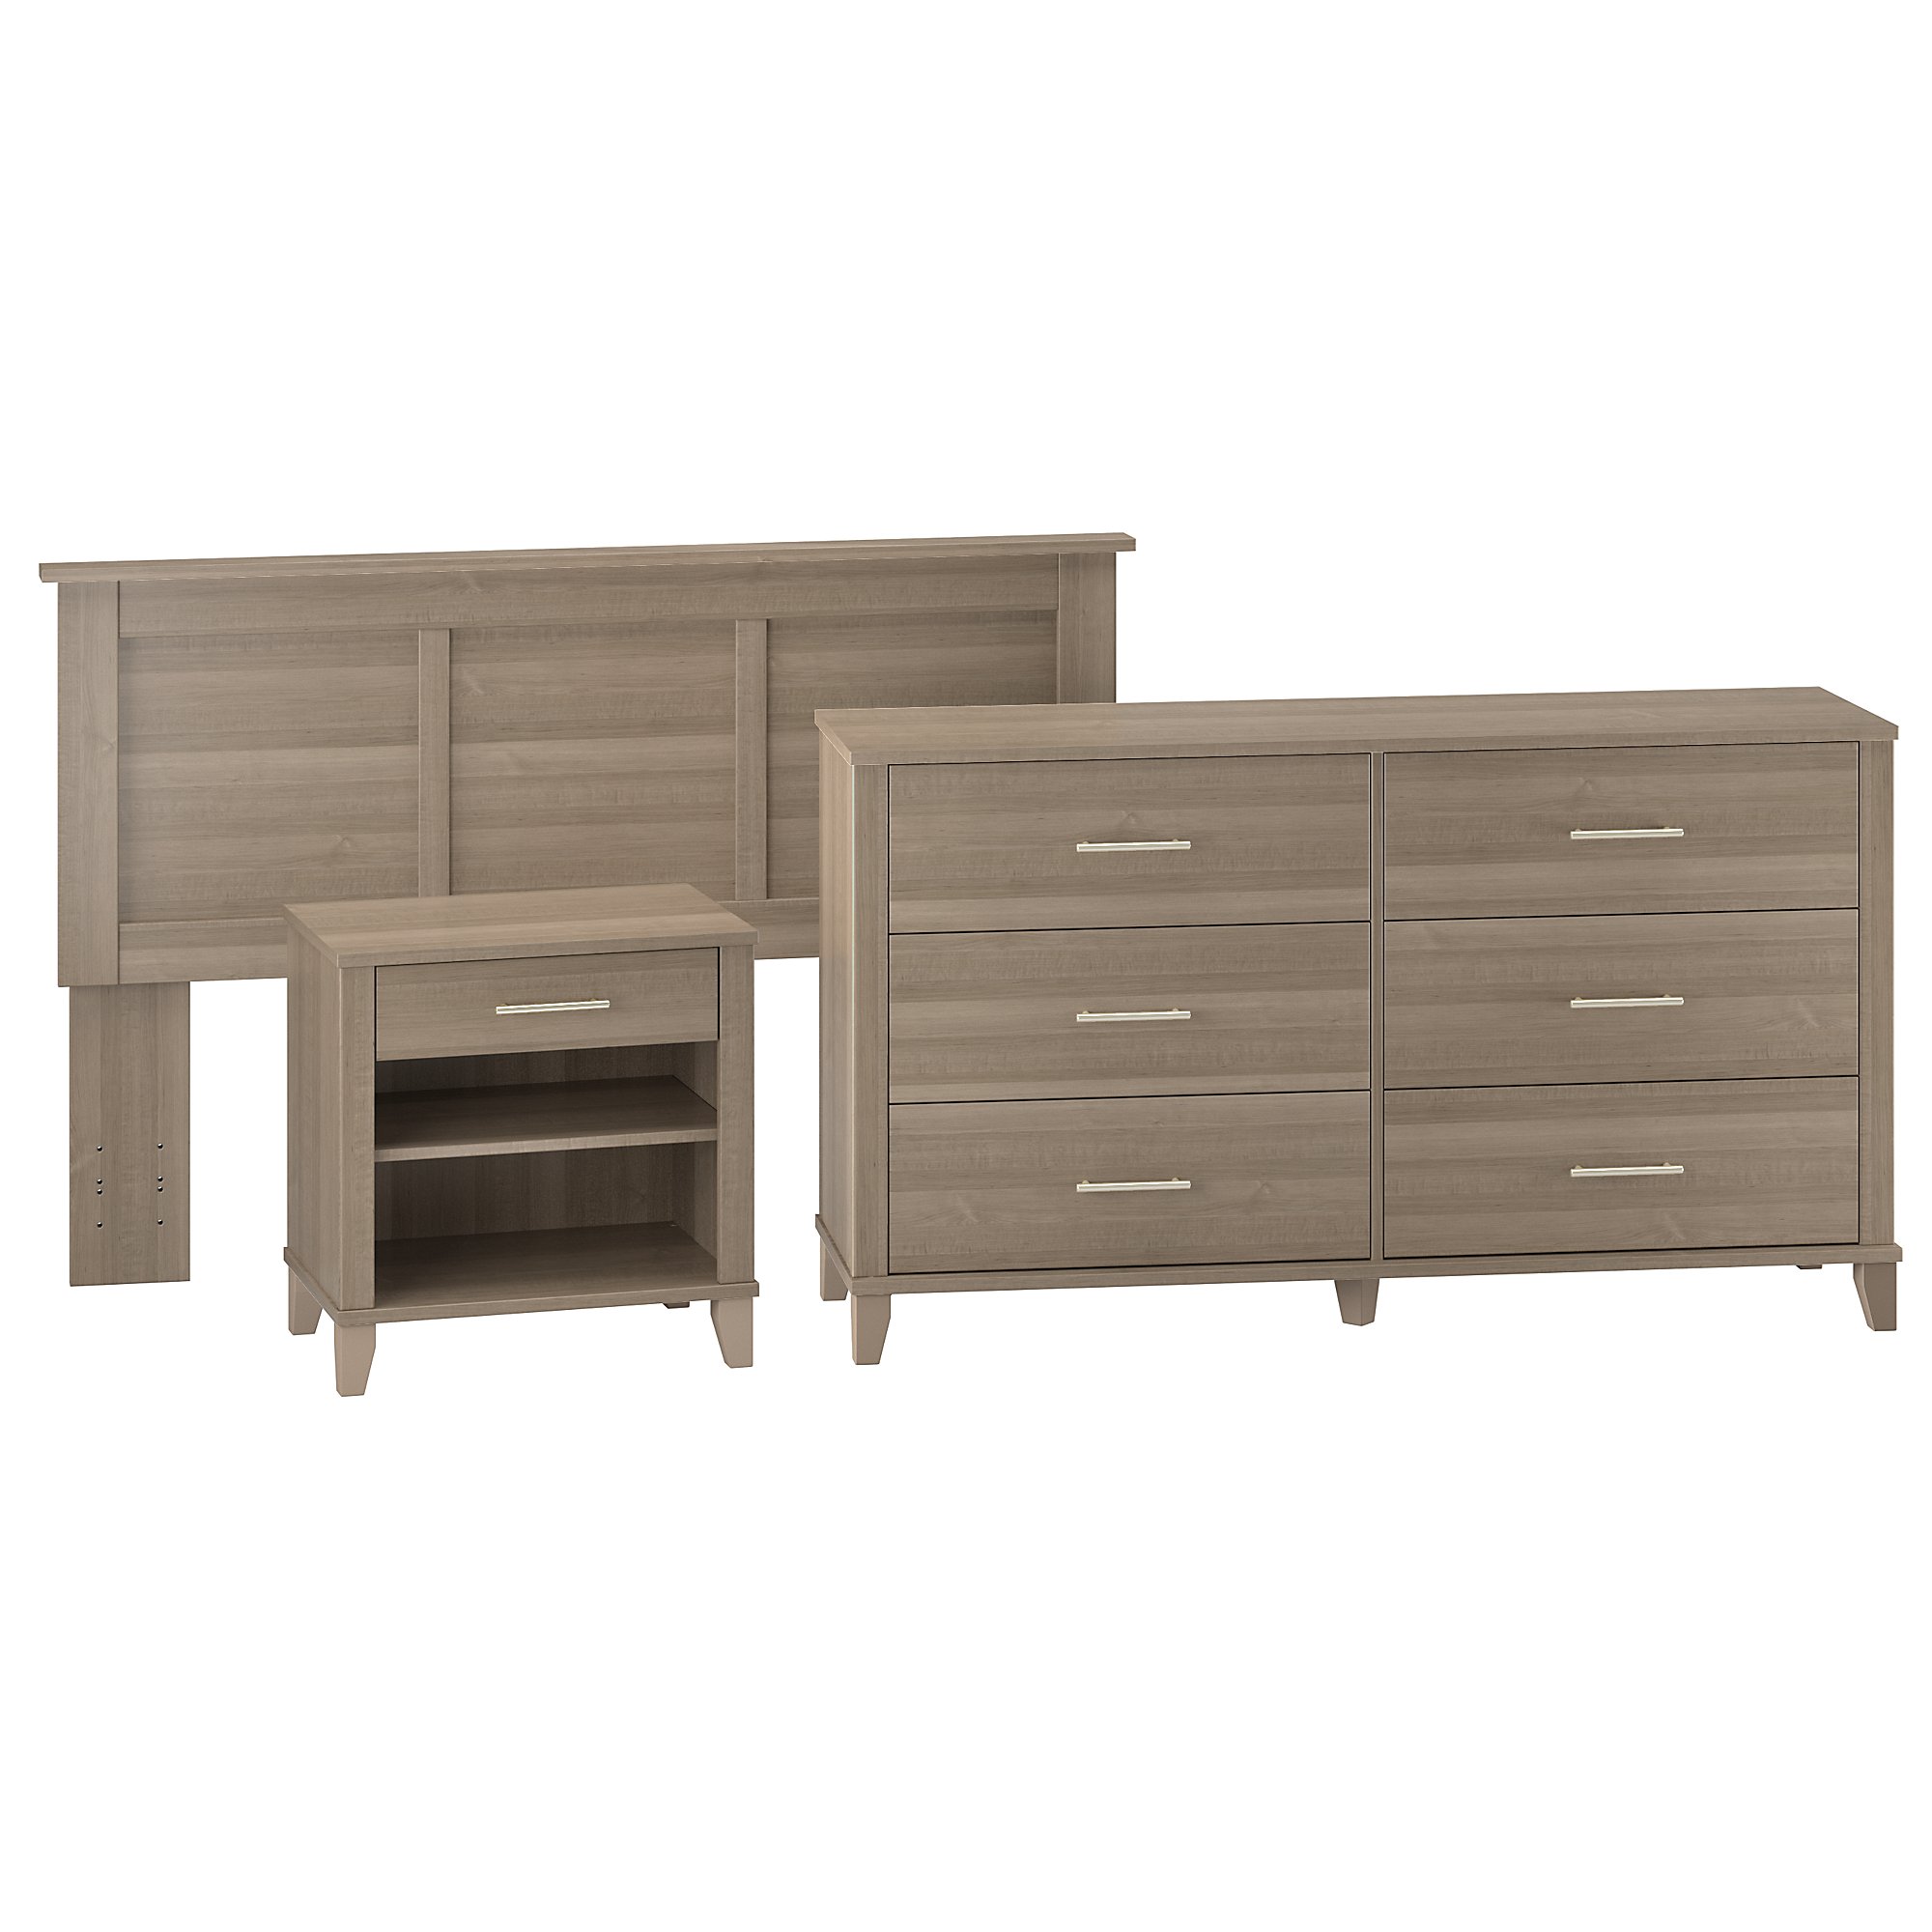 Bush Furniture Somerset Bedroom Headboard Dresser And Nightstand Bedroom Set